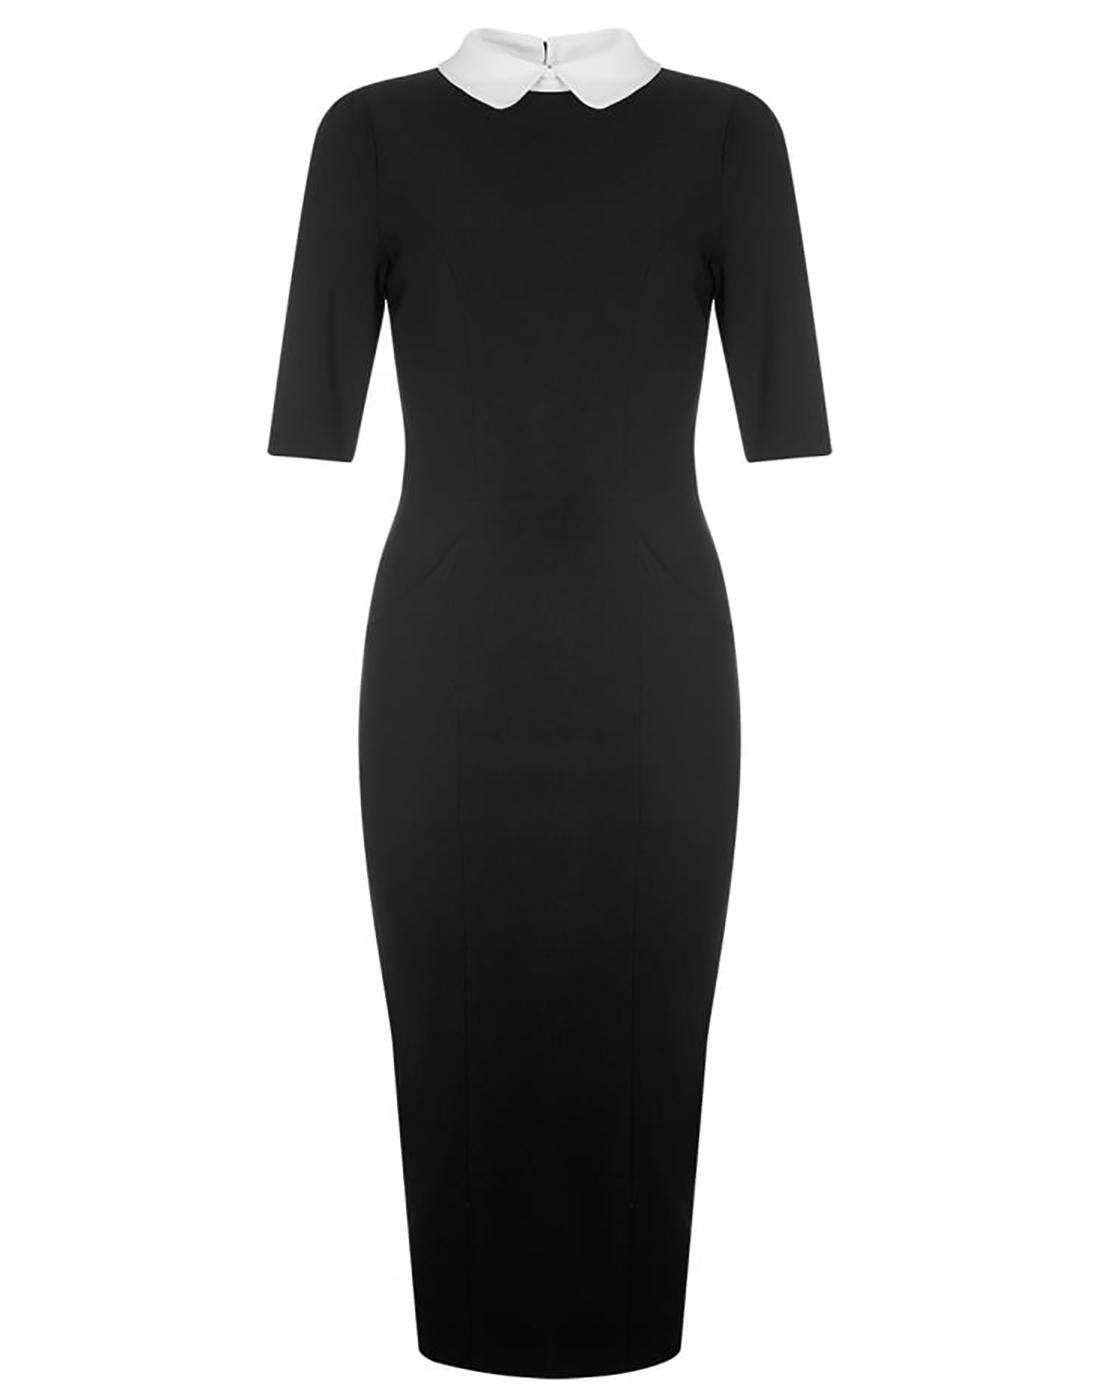 COLLECTIF Winona Retro Mod Pencil Dress in Black